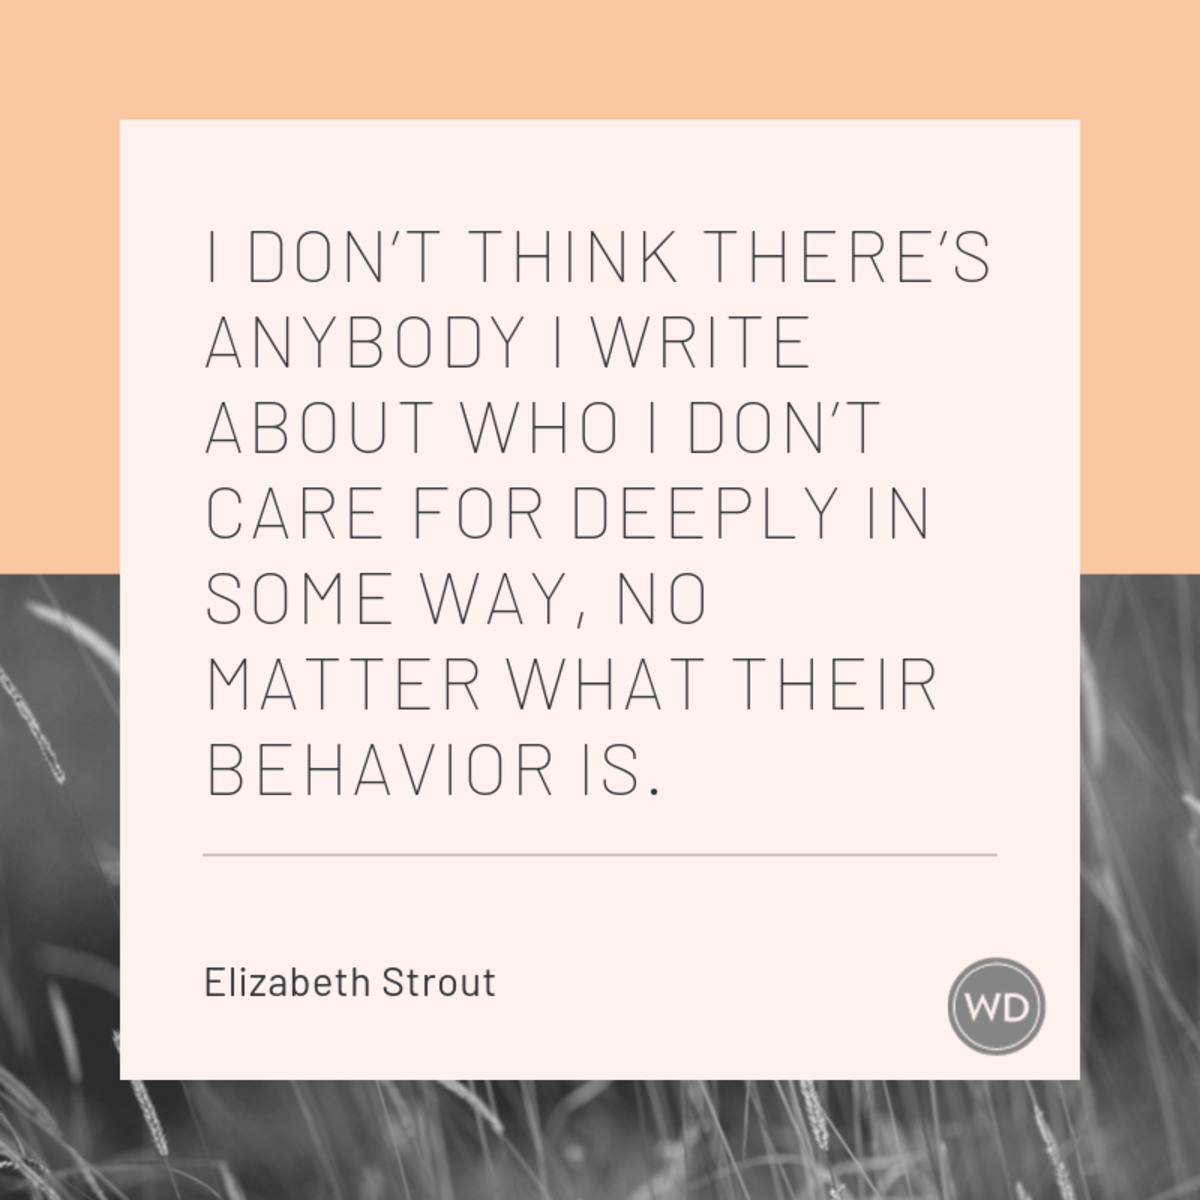 Elizabeth Strout quotes